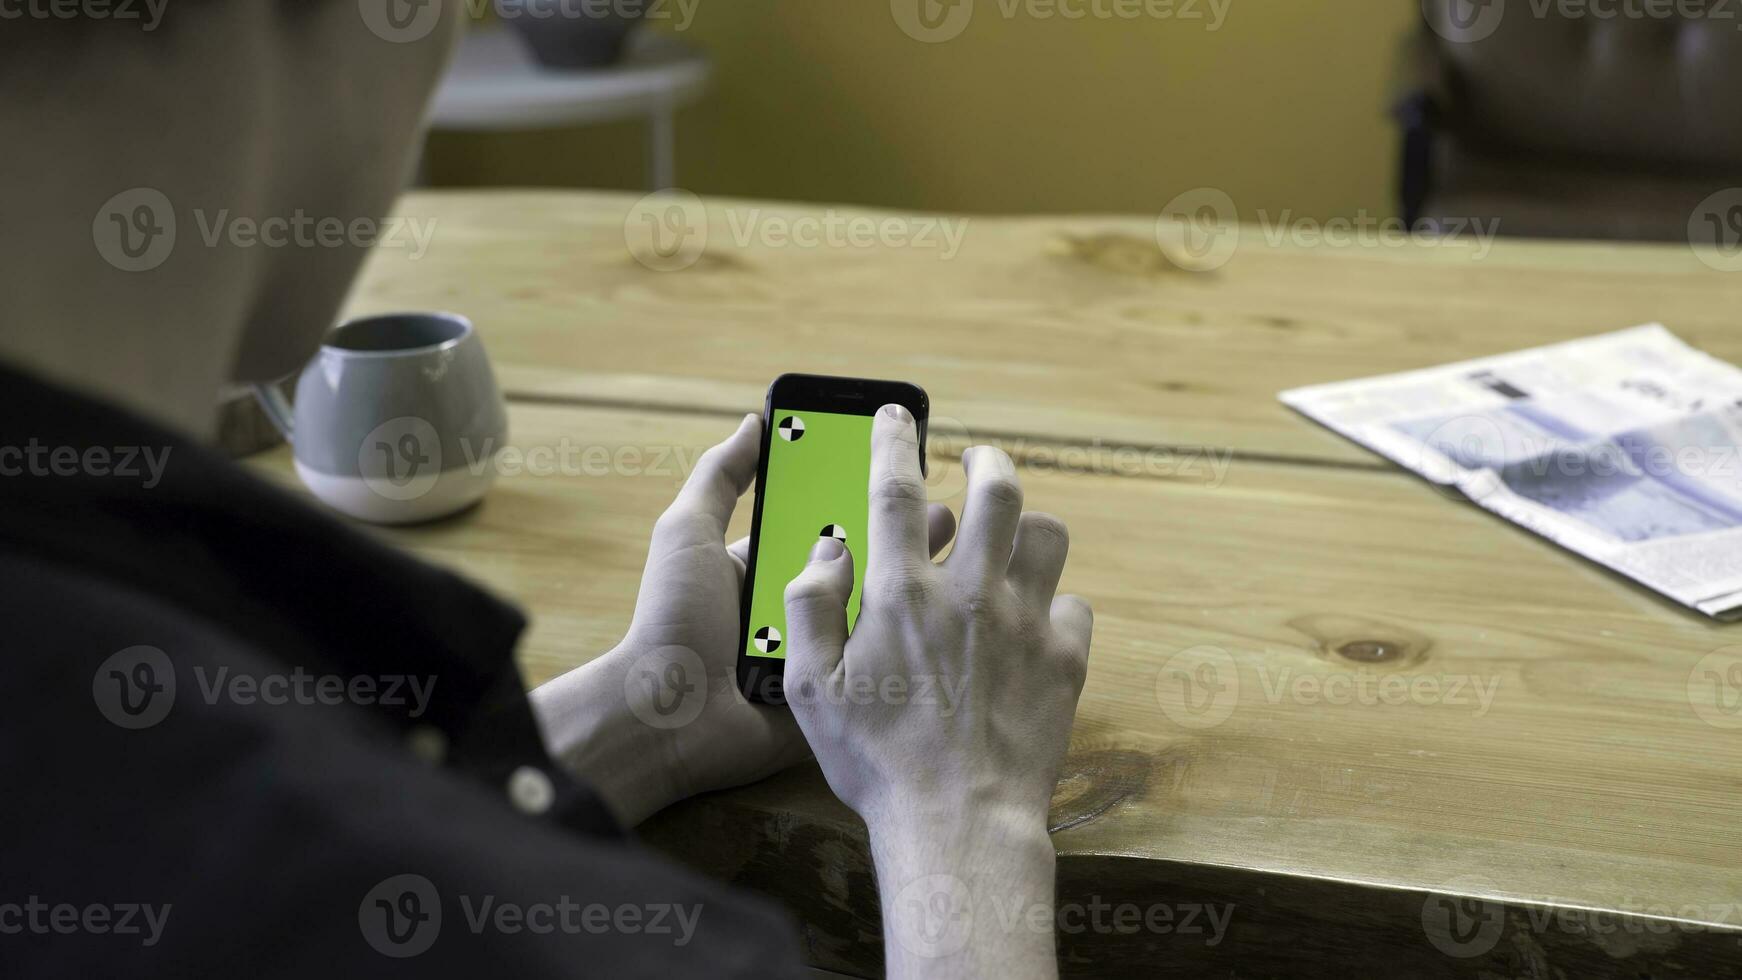 een vent Holding in armen elektronica apparaatje met groen scherm Chroma sleutel, scrollen en tikken het Aan houten tafel achtergrond. voorraad filmmateriaal. menselijk zitten en gebruik de handheld mobiele telefoon in kamer. foto